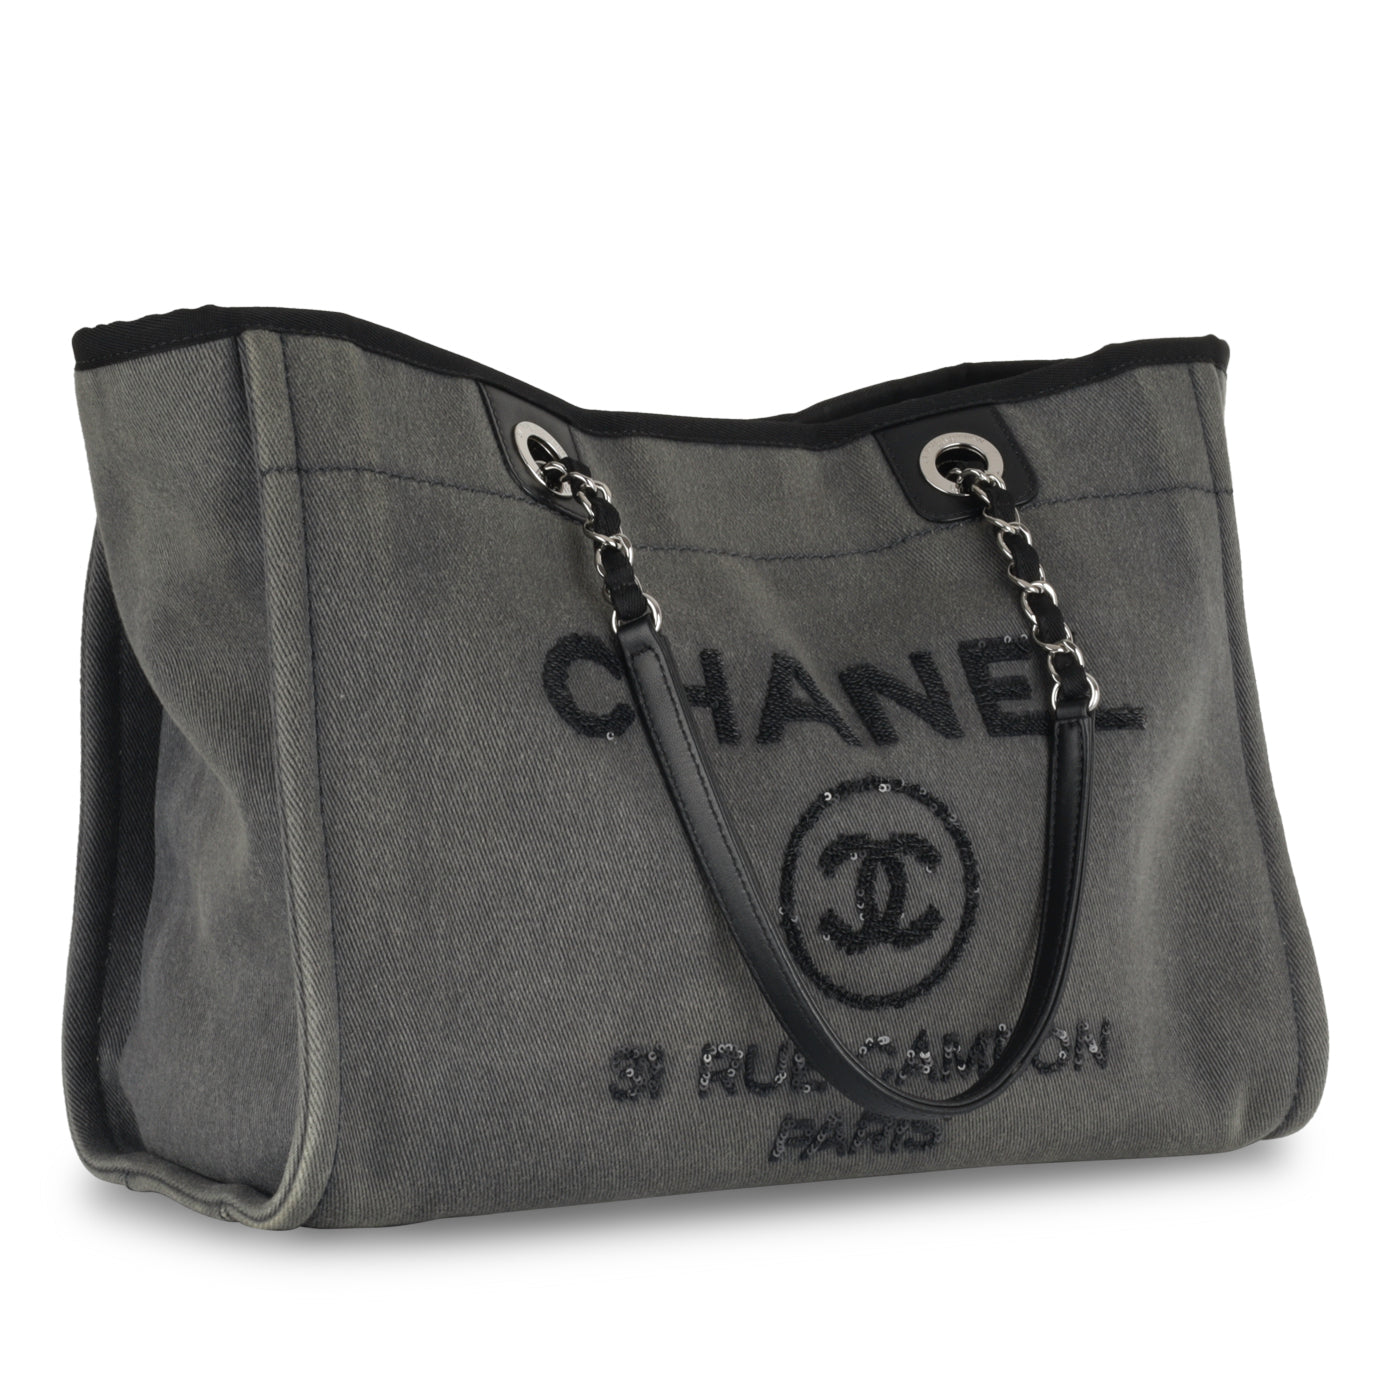 Chanel Bag Small Deauville Tote Grey Raffia – Mightychic